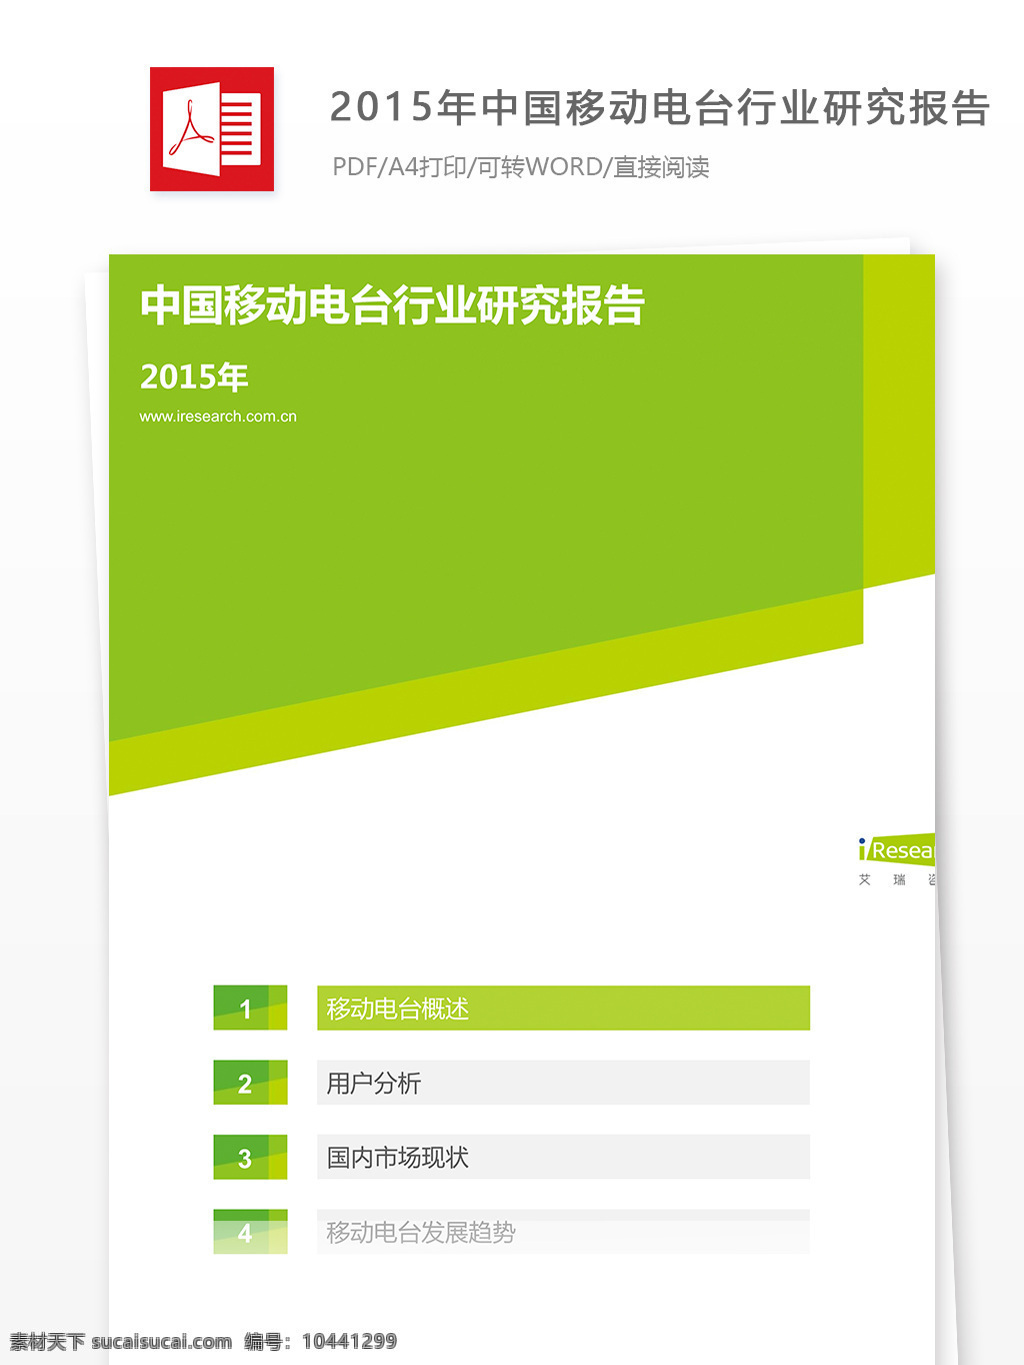 2015 年中 国 移动 电台 行业 研究报告 中国移动电台 行业研究报告 报告 分析 数据 大数据支持